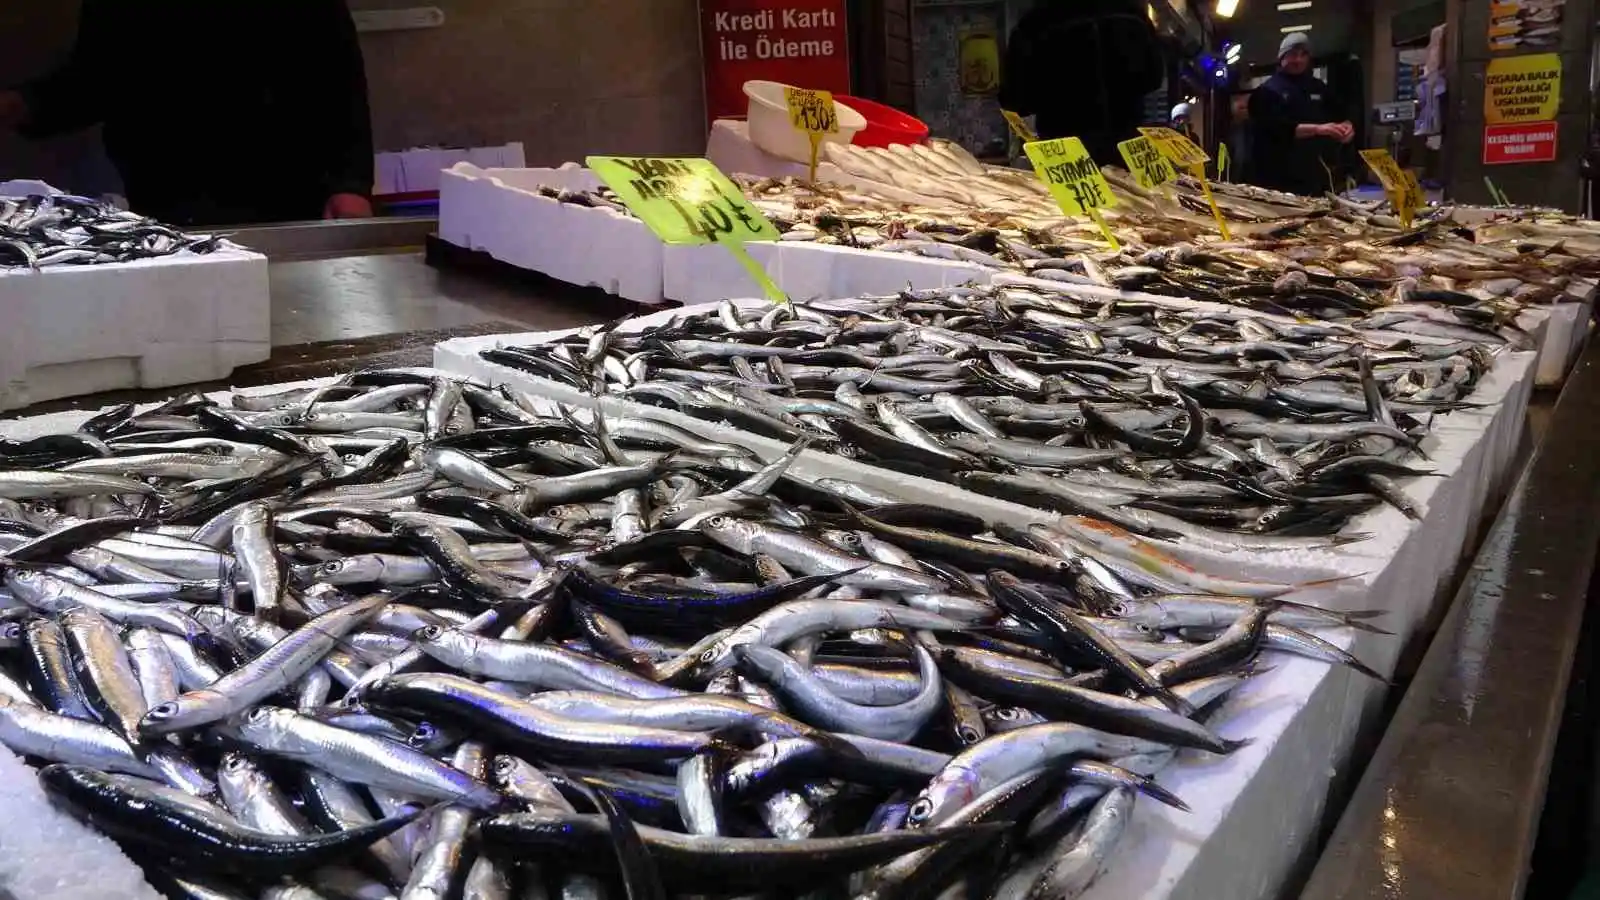 Trabzon’da balık av sezonu sonuna doğru tezgahlarda çeşit bolluğu
